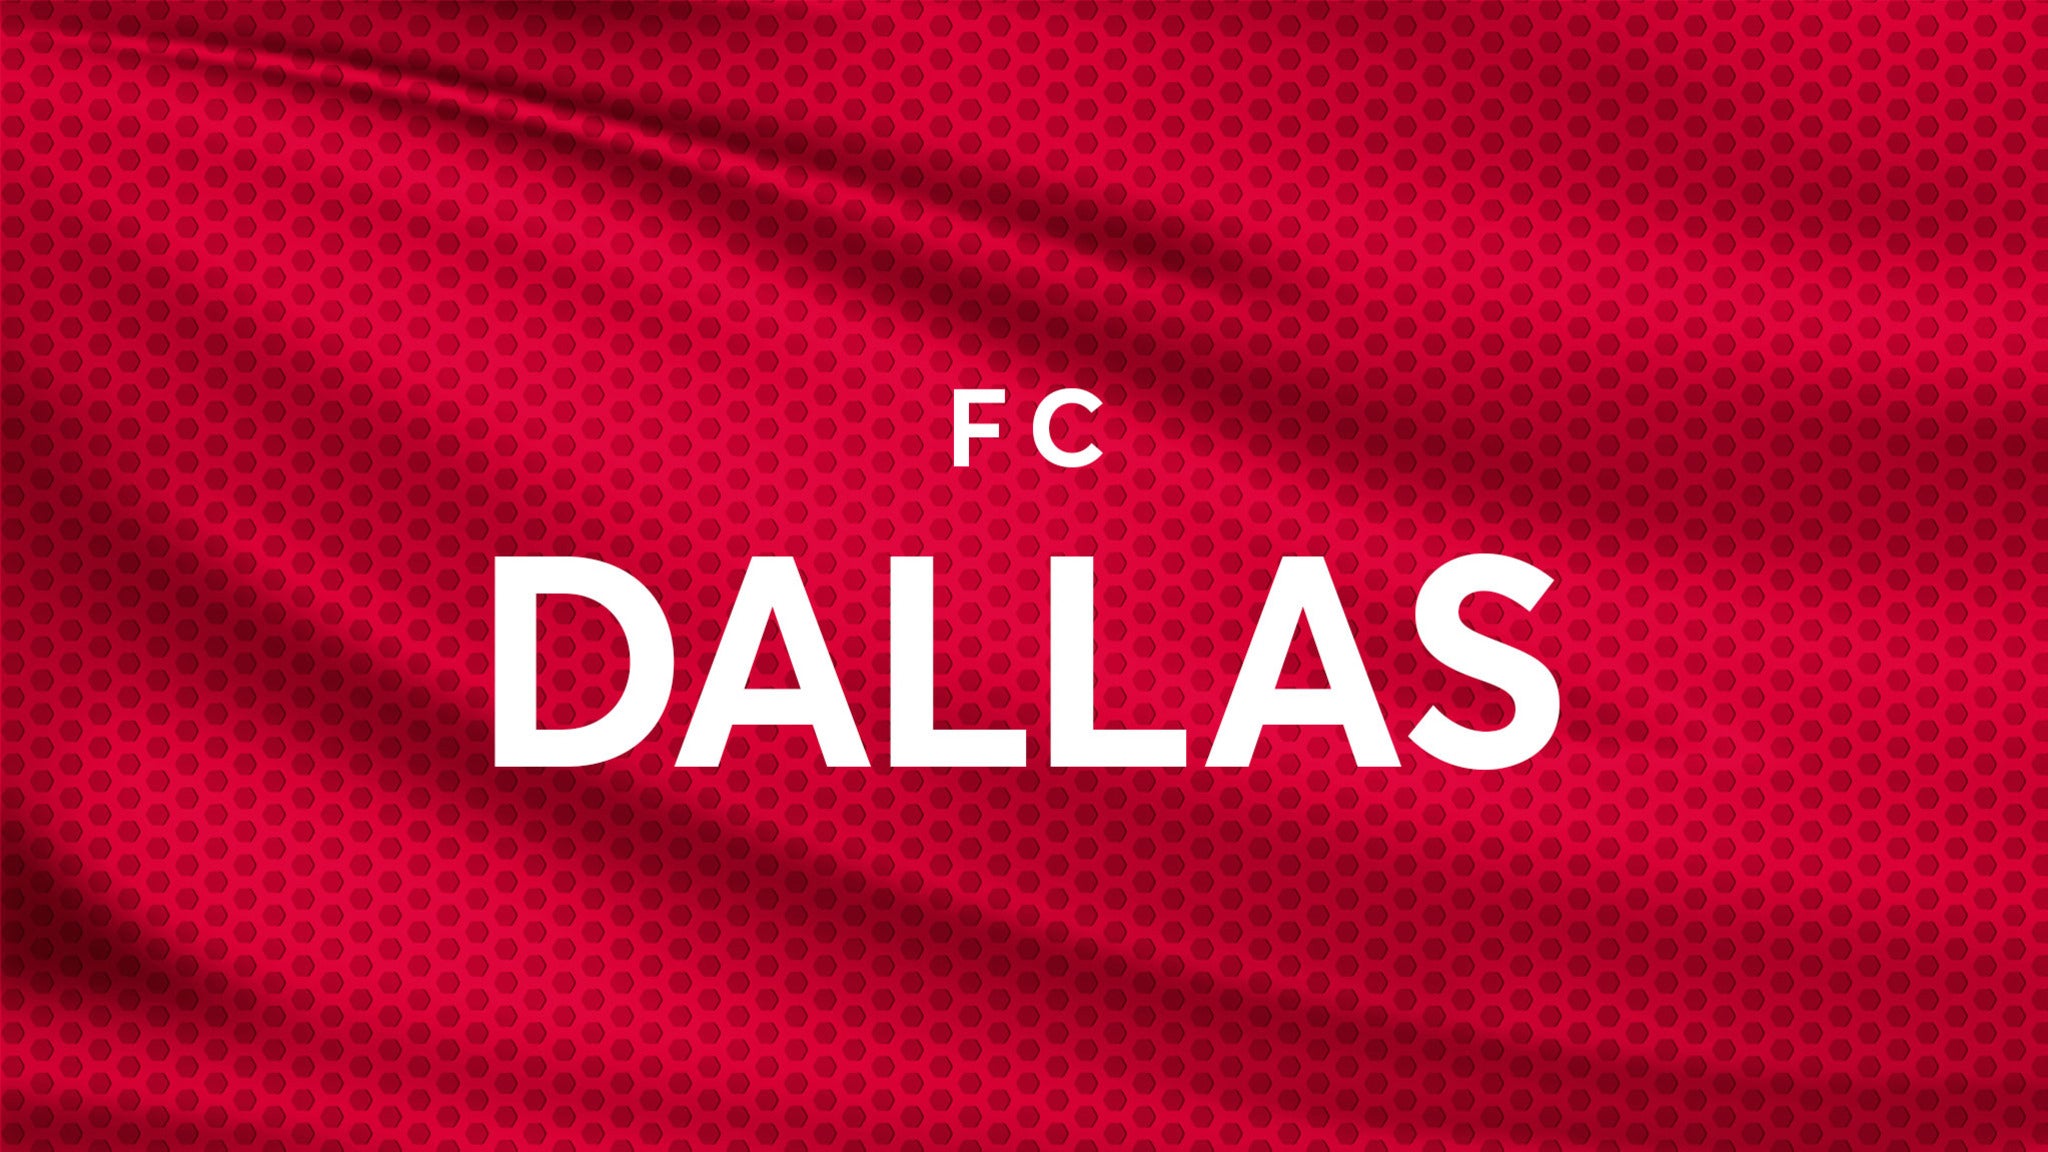 FC Dallas at Toyota Stadium